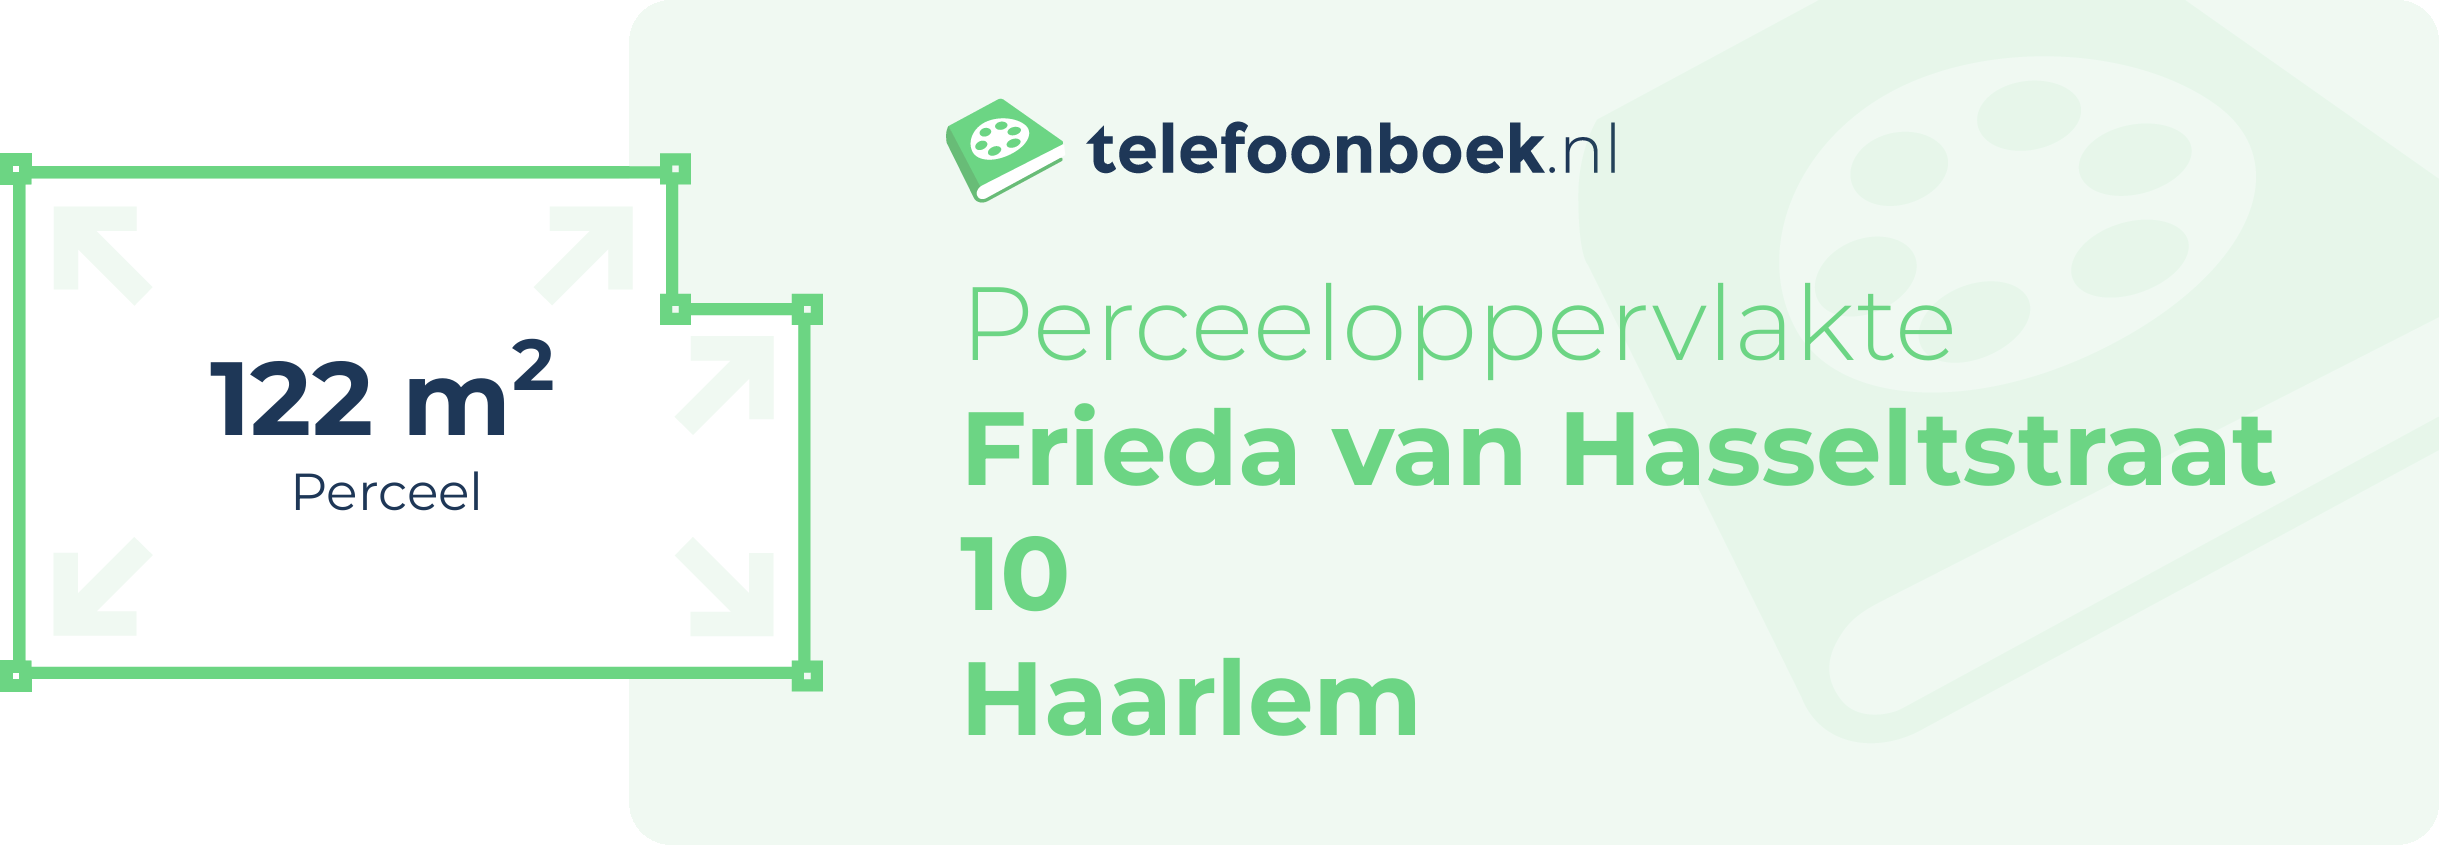 Perceeloppervlakte Frieda Van Hasseltstraat 10 Haarlem